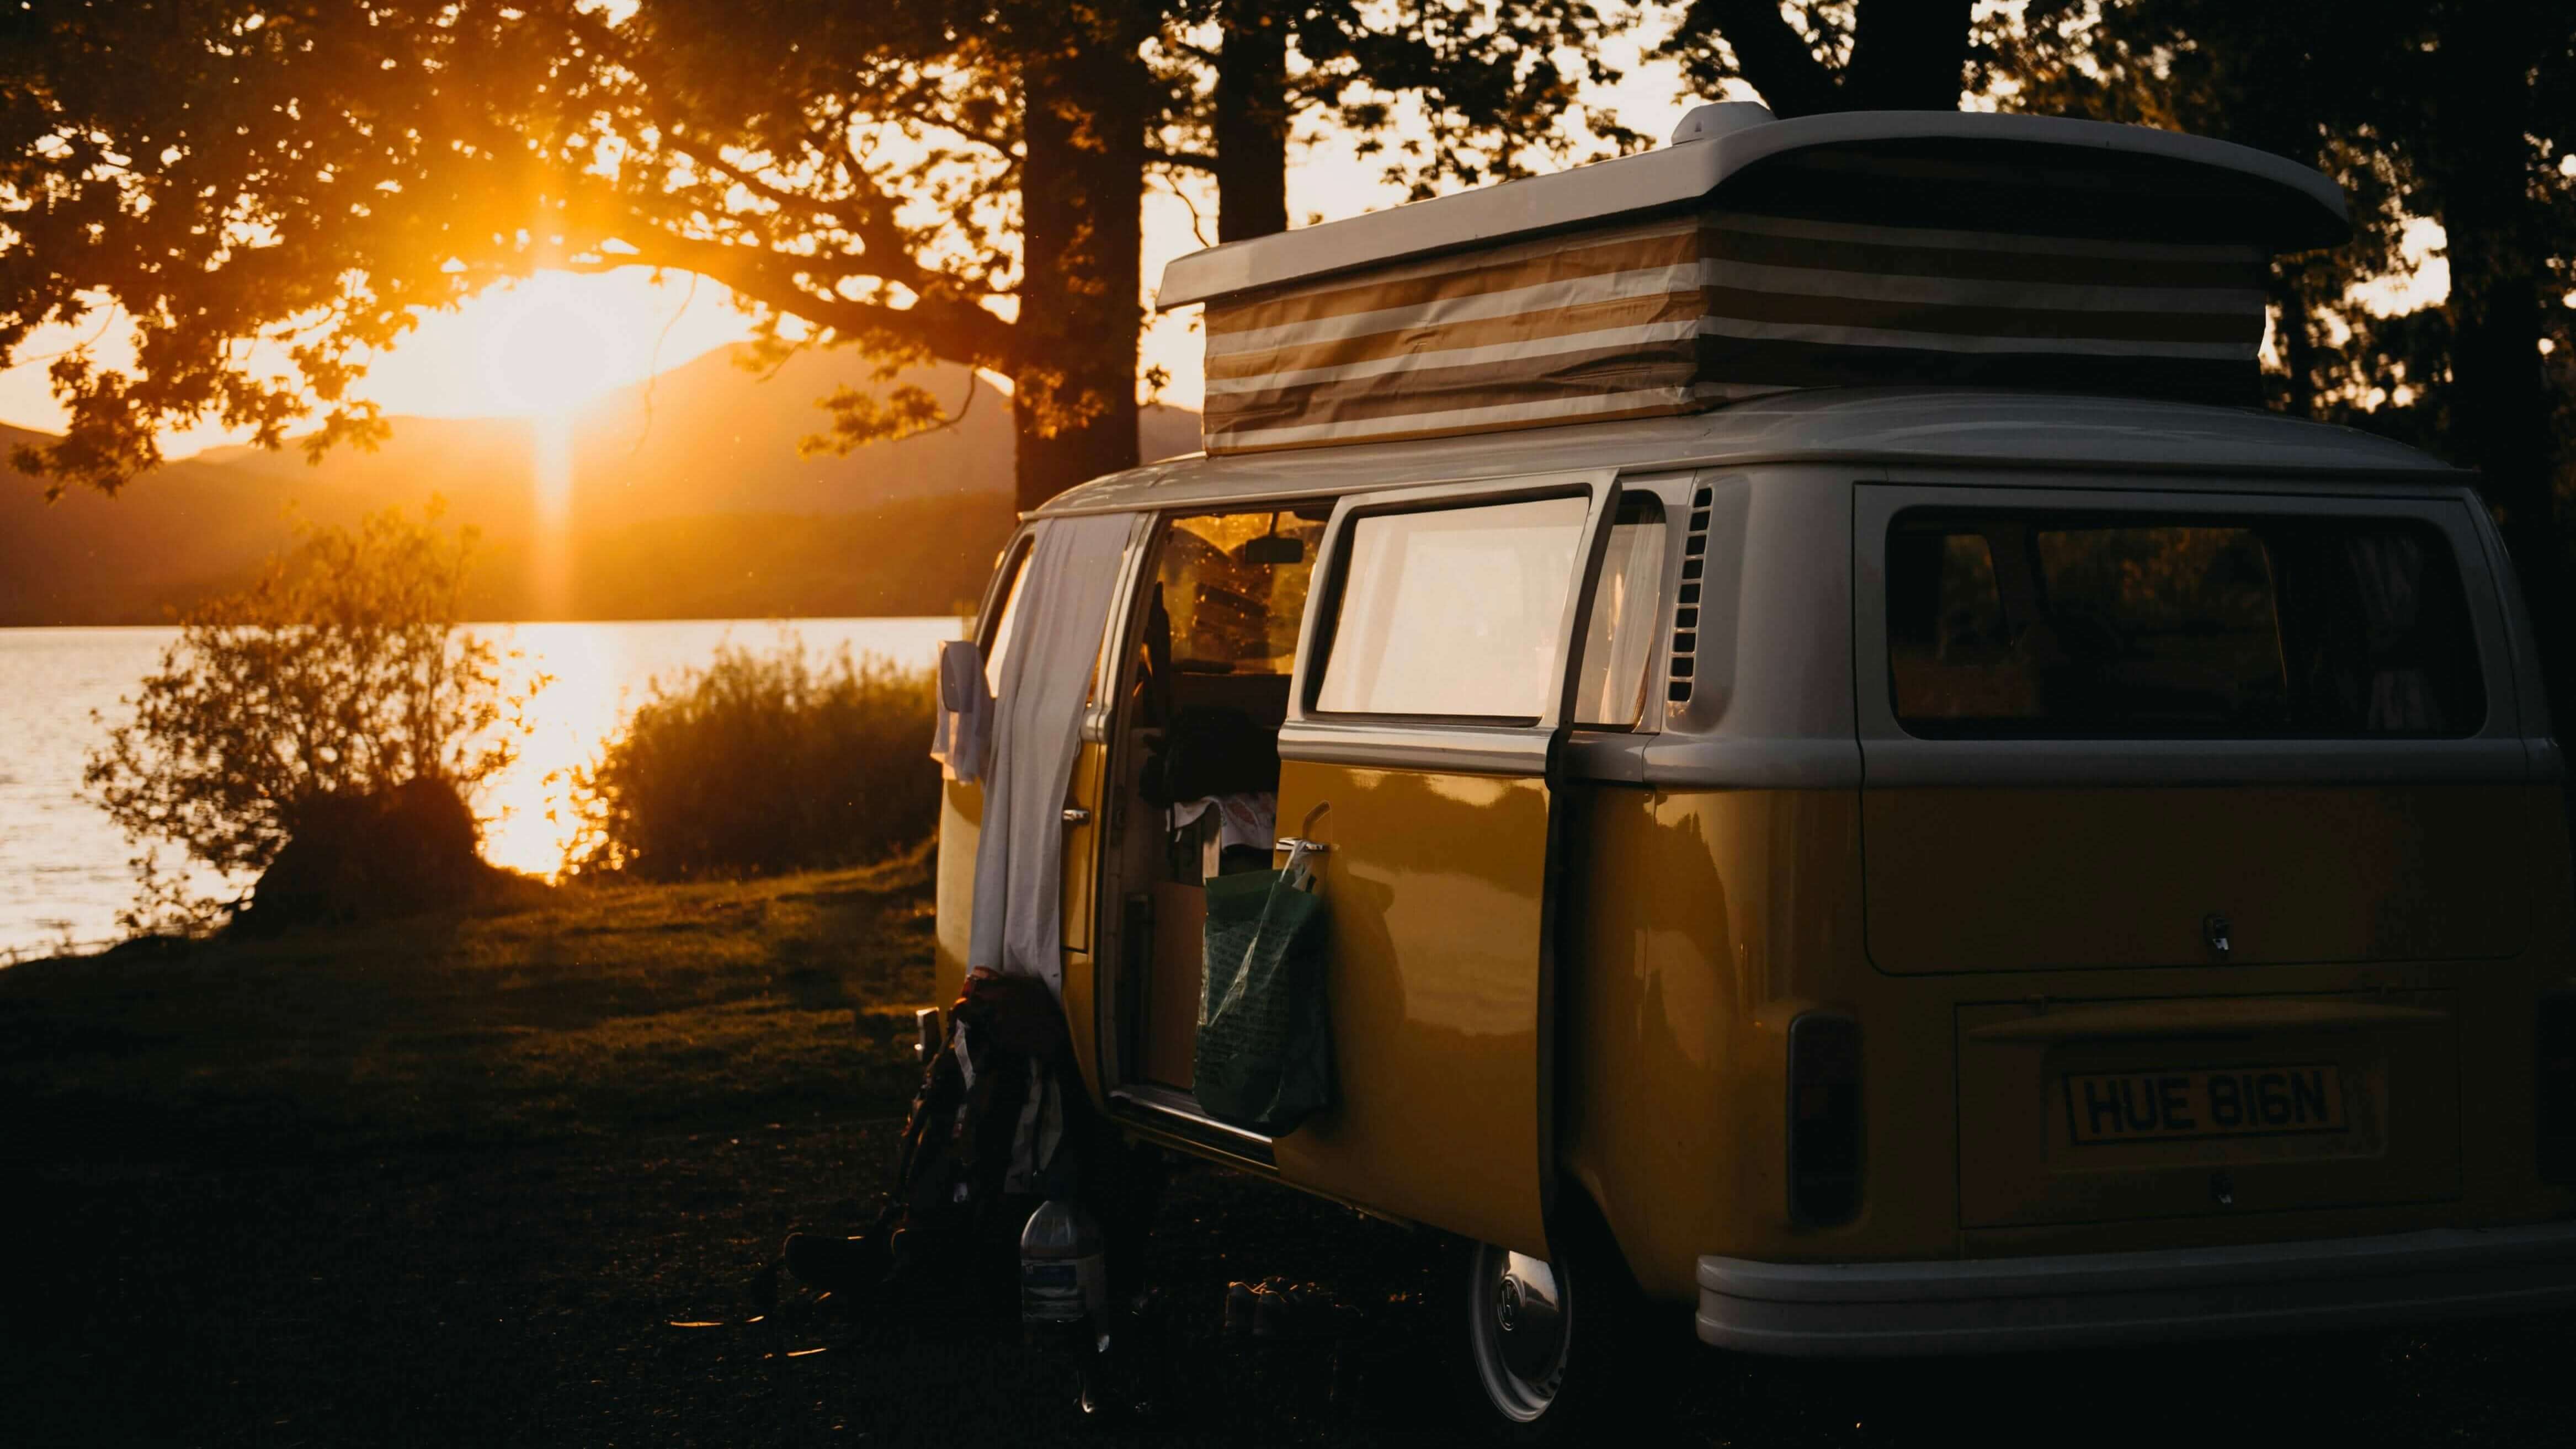 VW Bulli Campervan am Seeufer bei Sonnenuntergang mit offener Schiebetür und aufgeklapptem Dach